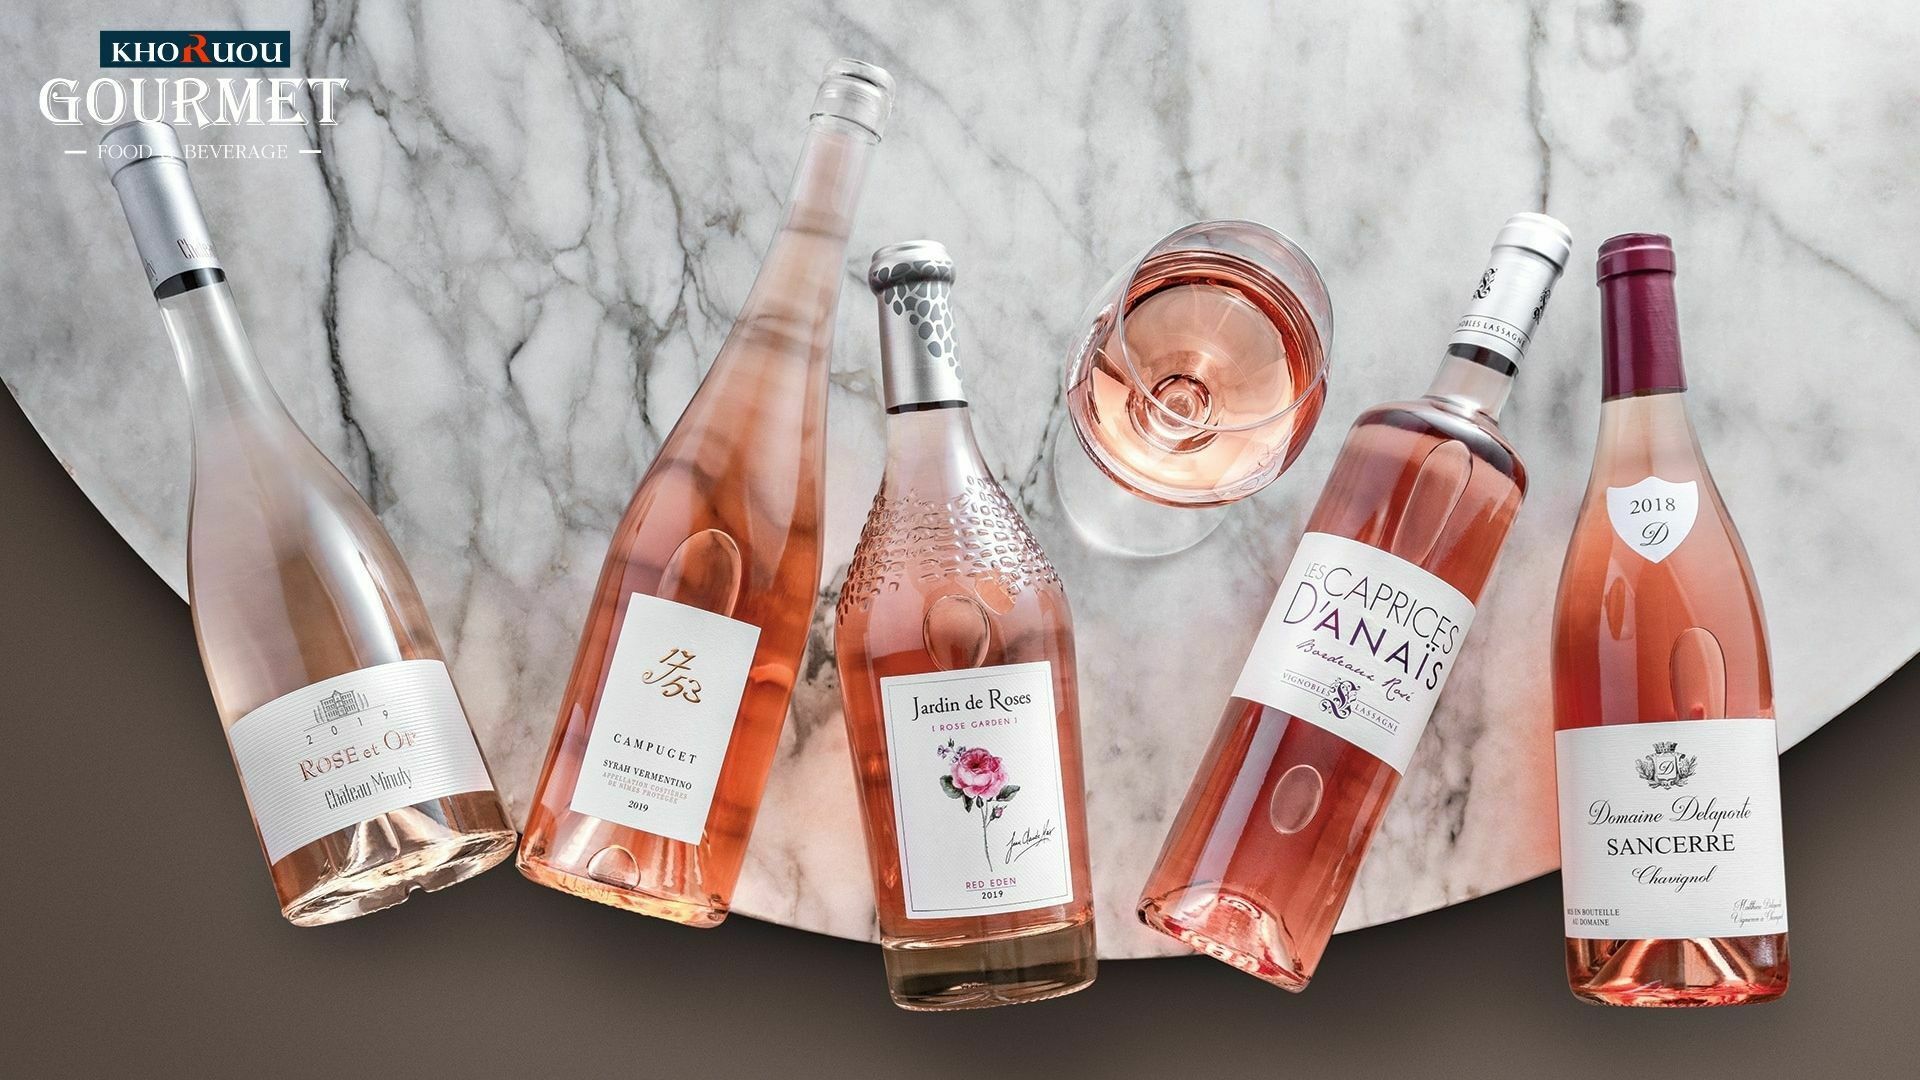 Rượu vang hồng là gì? Rượu vang hồng hay còn gọi là Wine Roses - sự kết hợp hoàn hảo giữa rượu vang đỏ và rượu vang trắng.